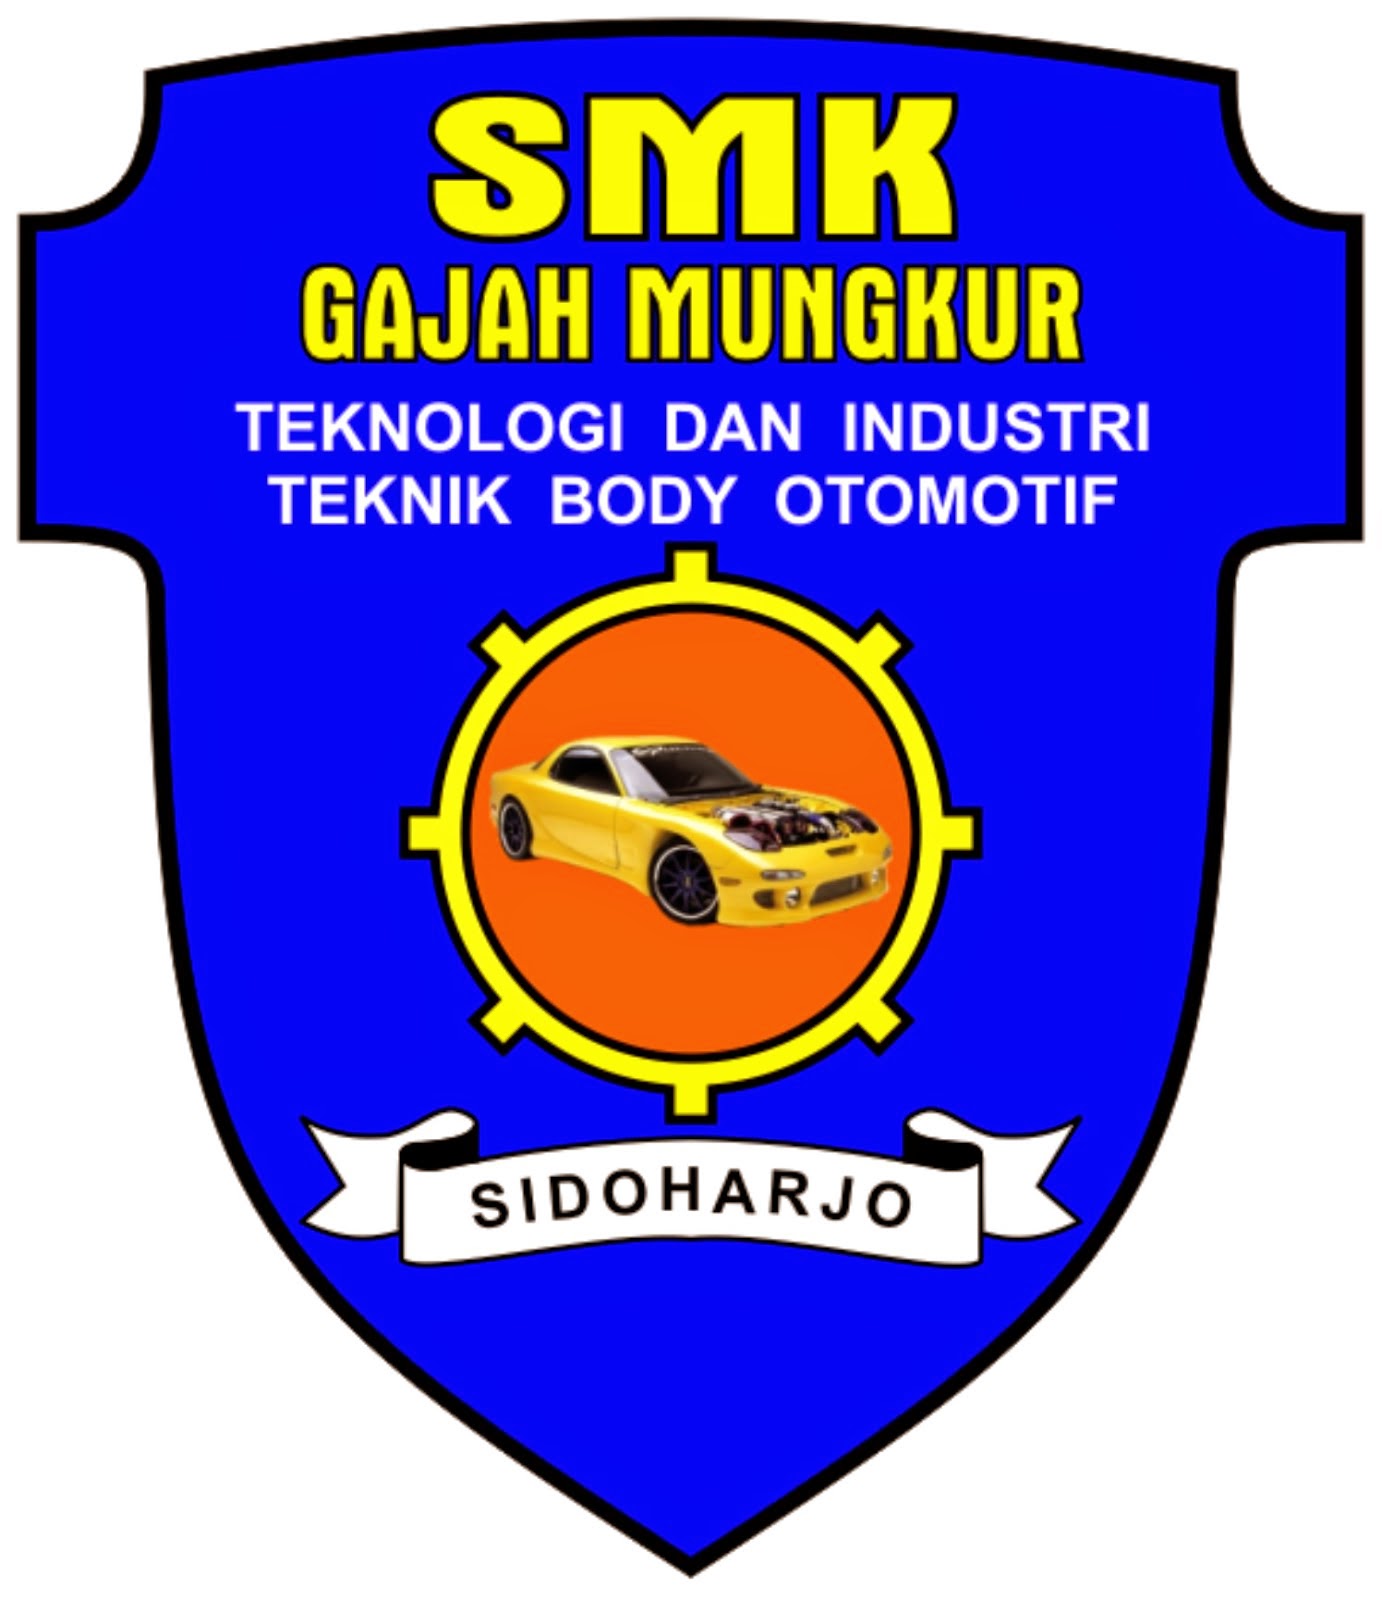 SMK GM SDH